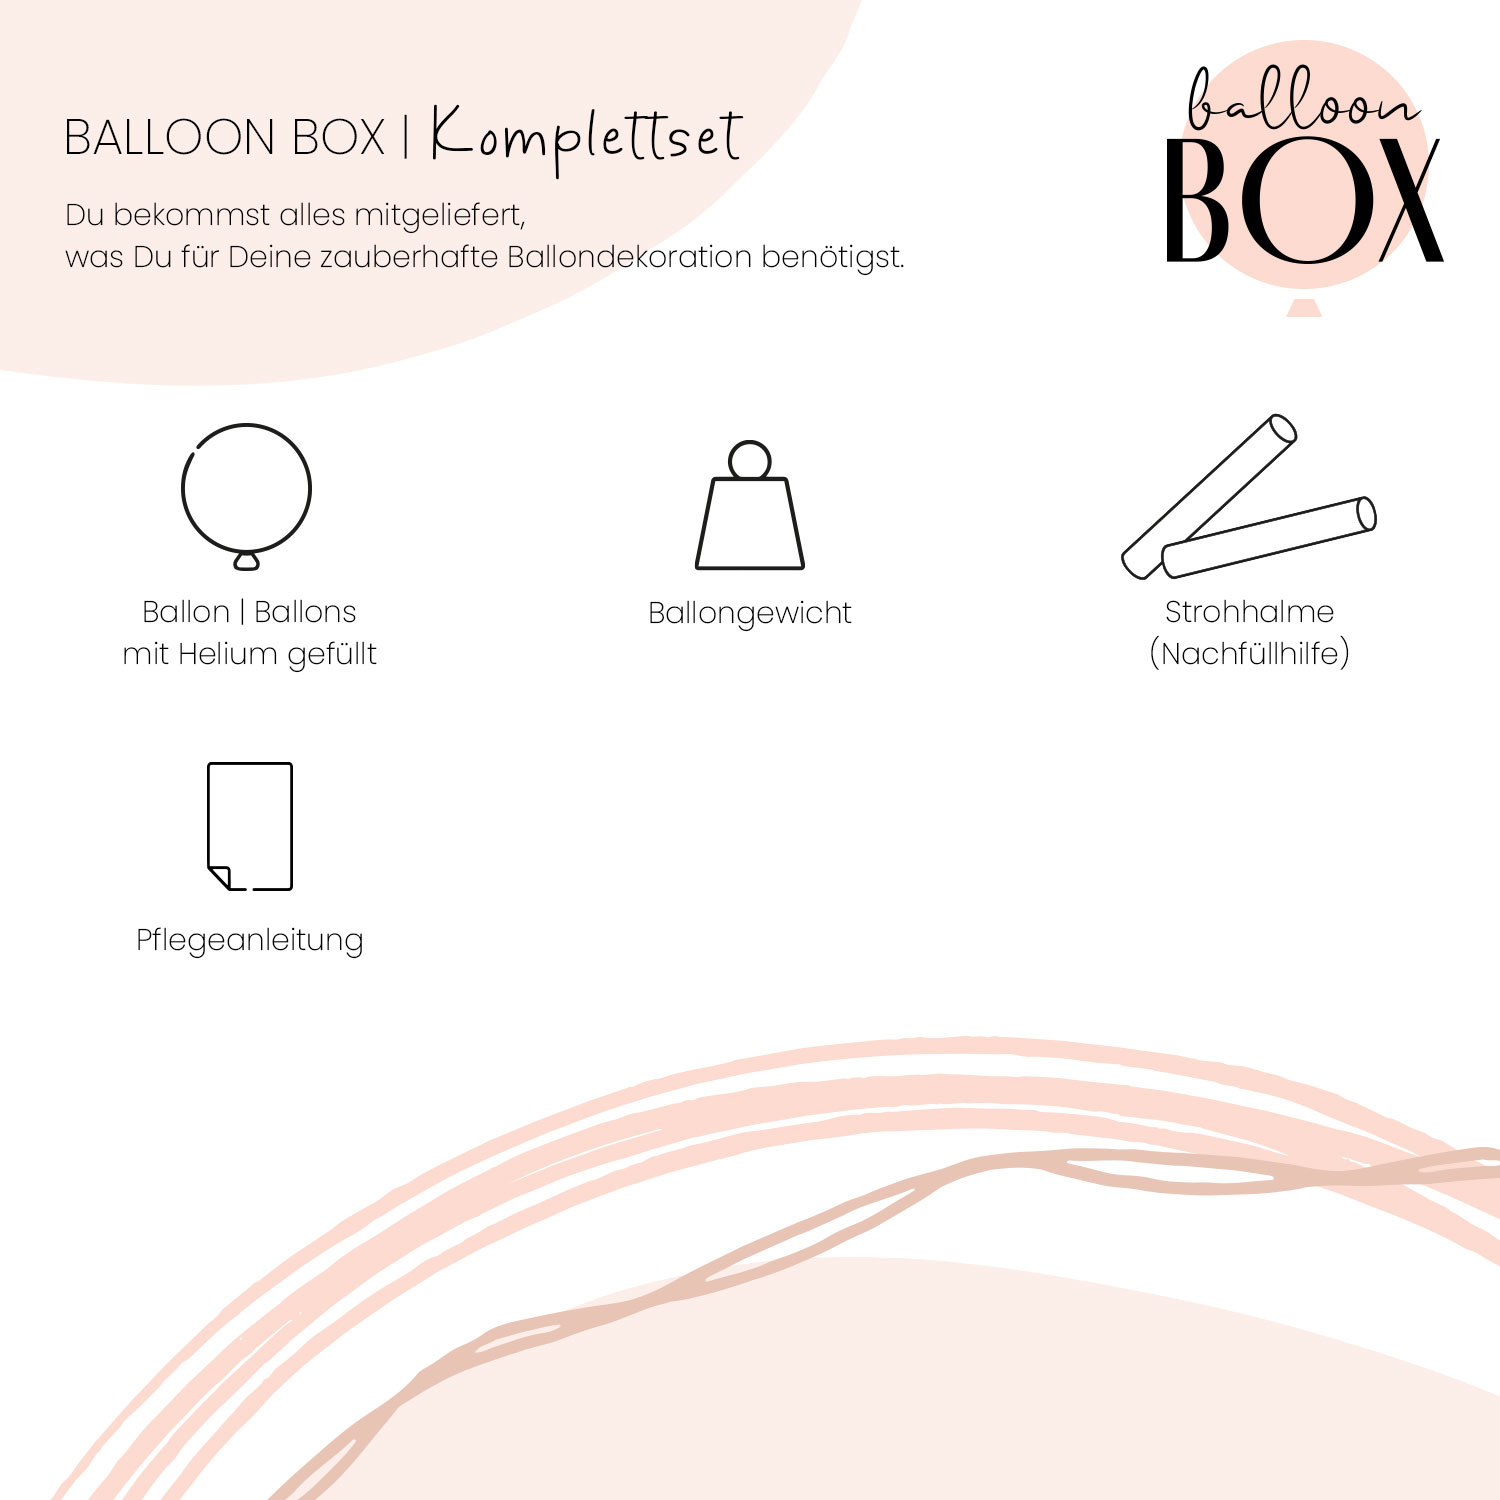 Heliumballon in a Box - Du schaffst das